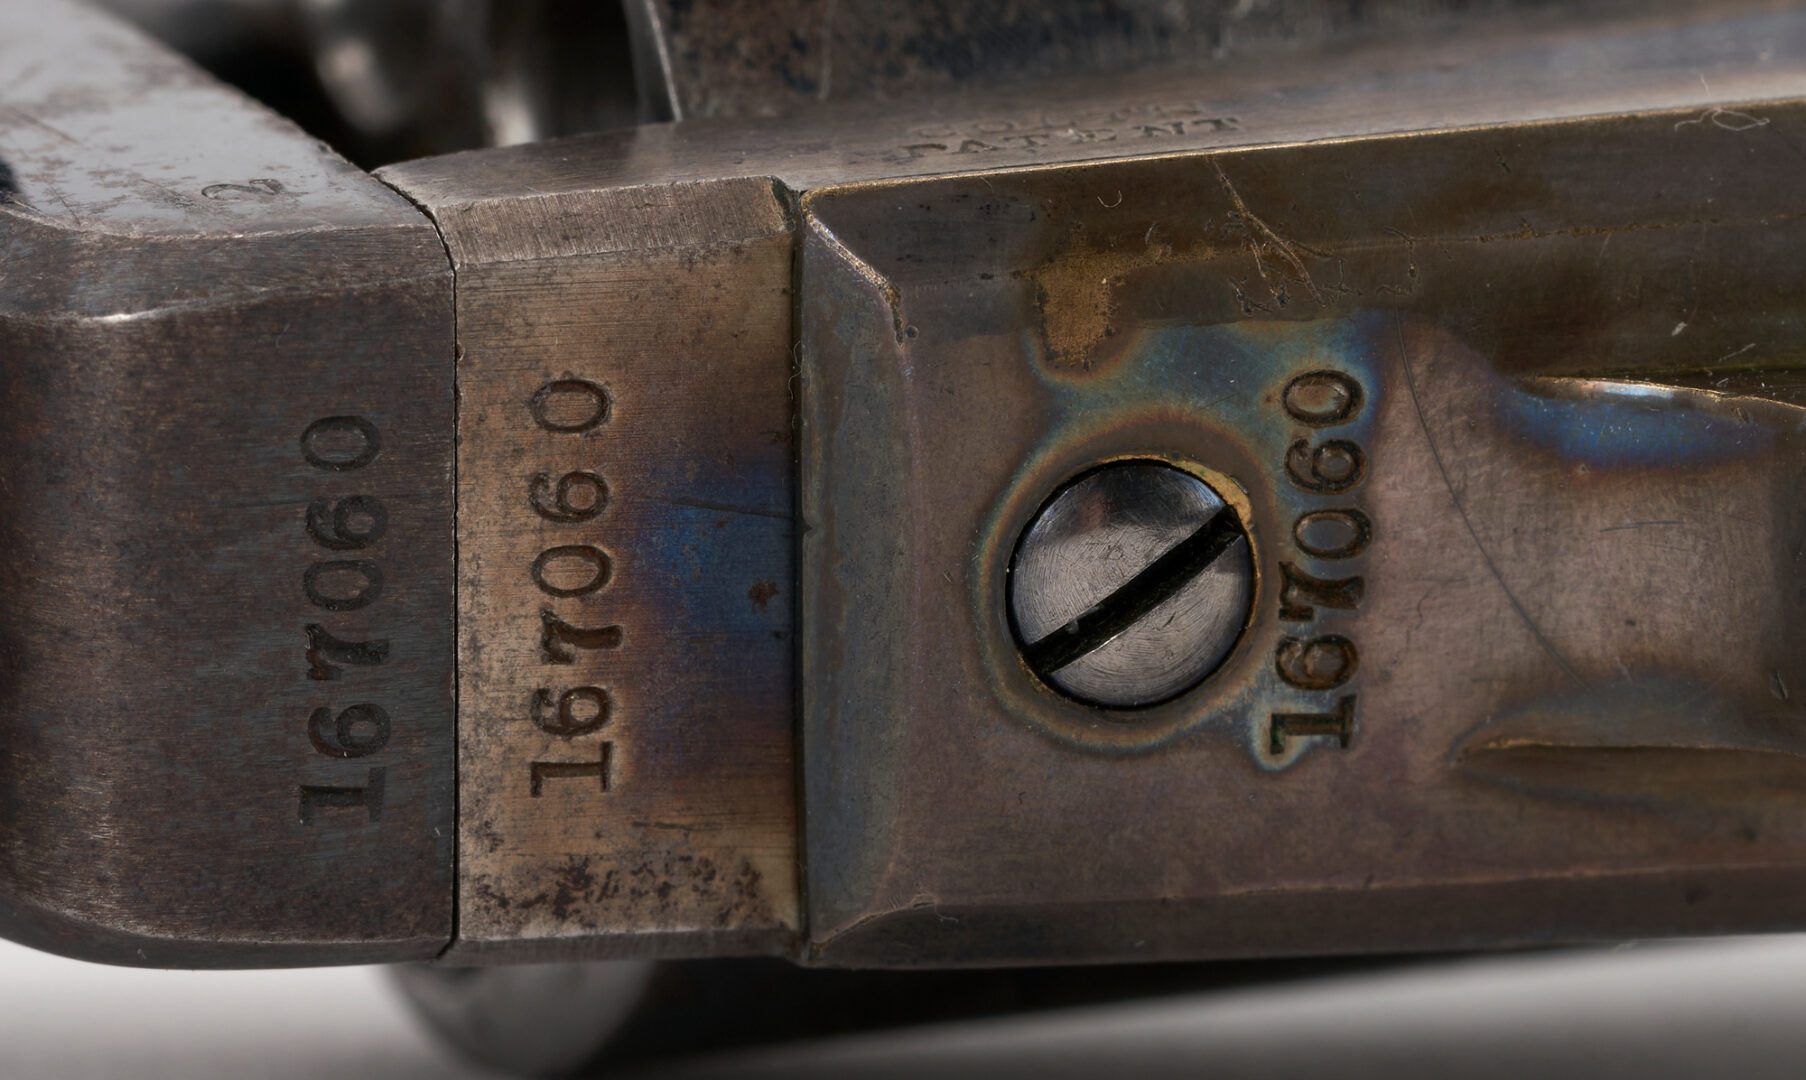 Lot 675: Civil War Colt 1849 Pocket Revolver, .31 cal., 2 items